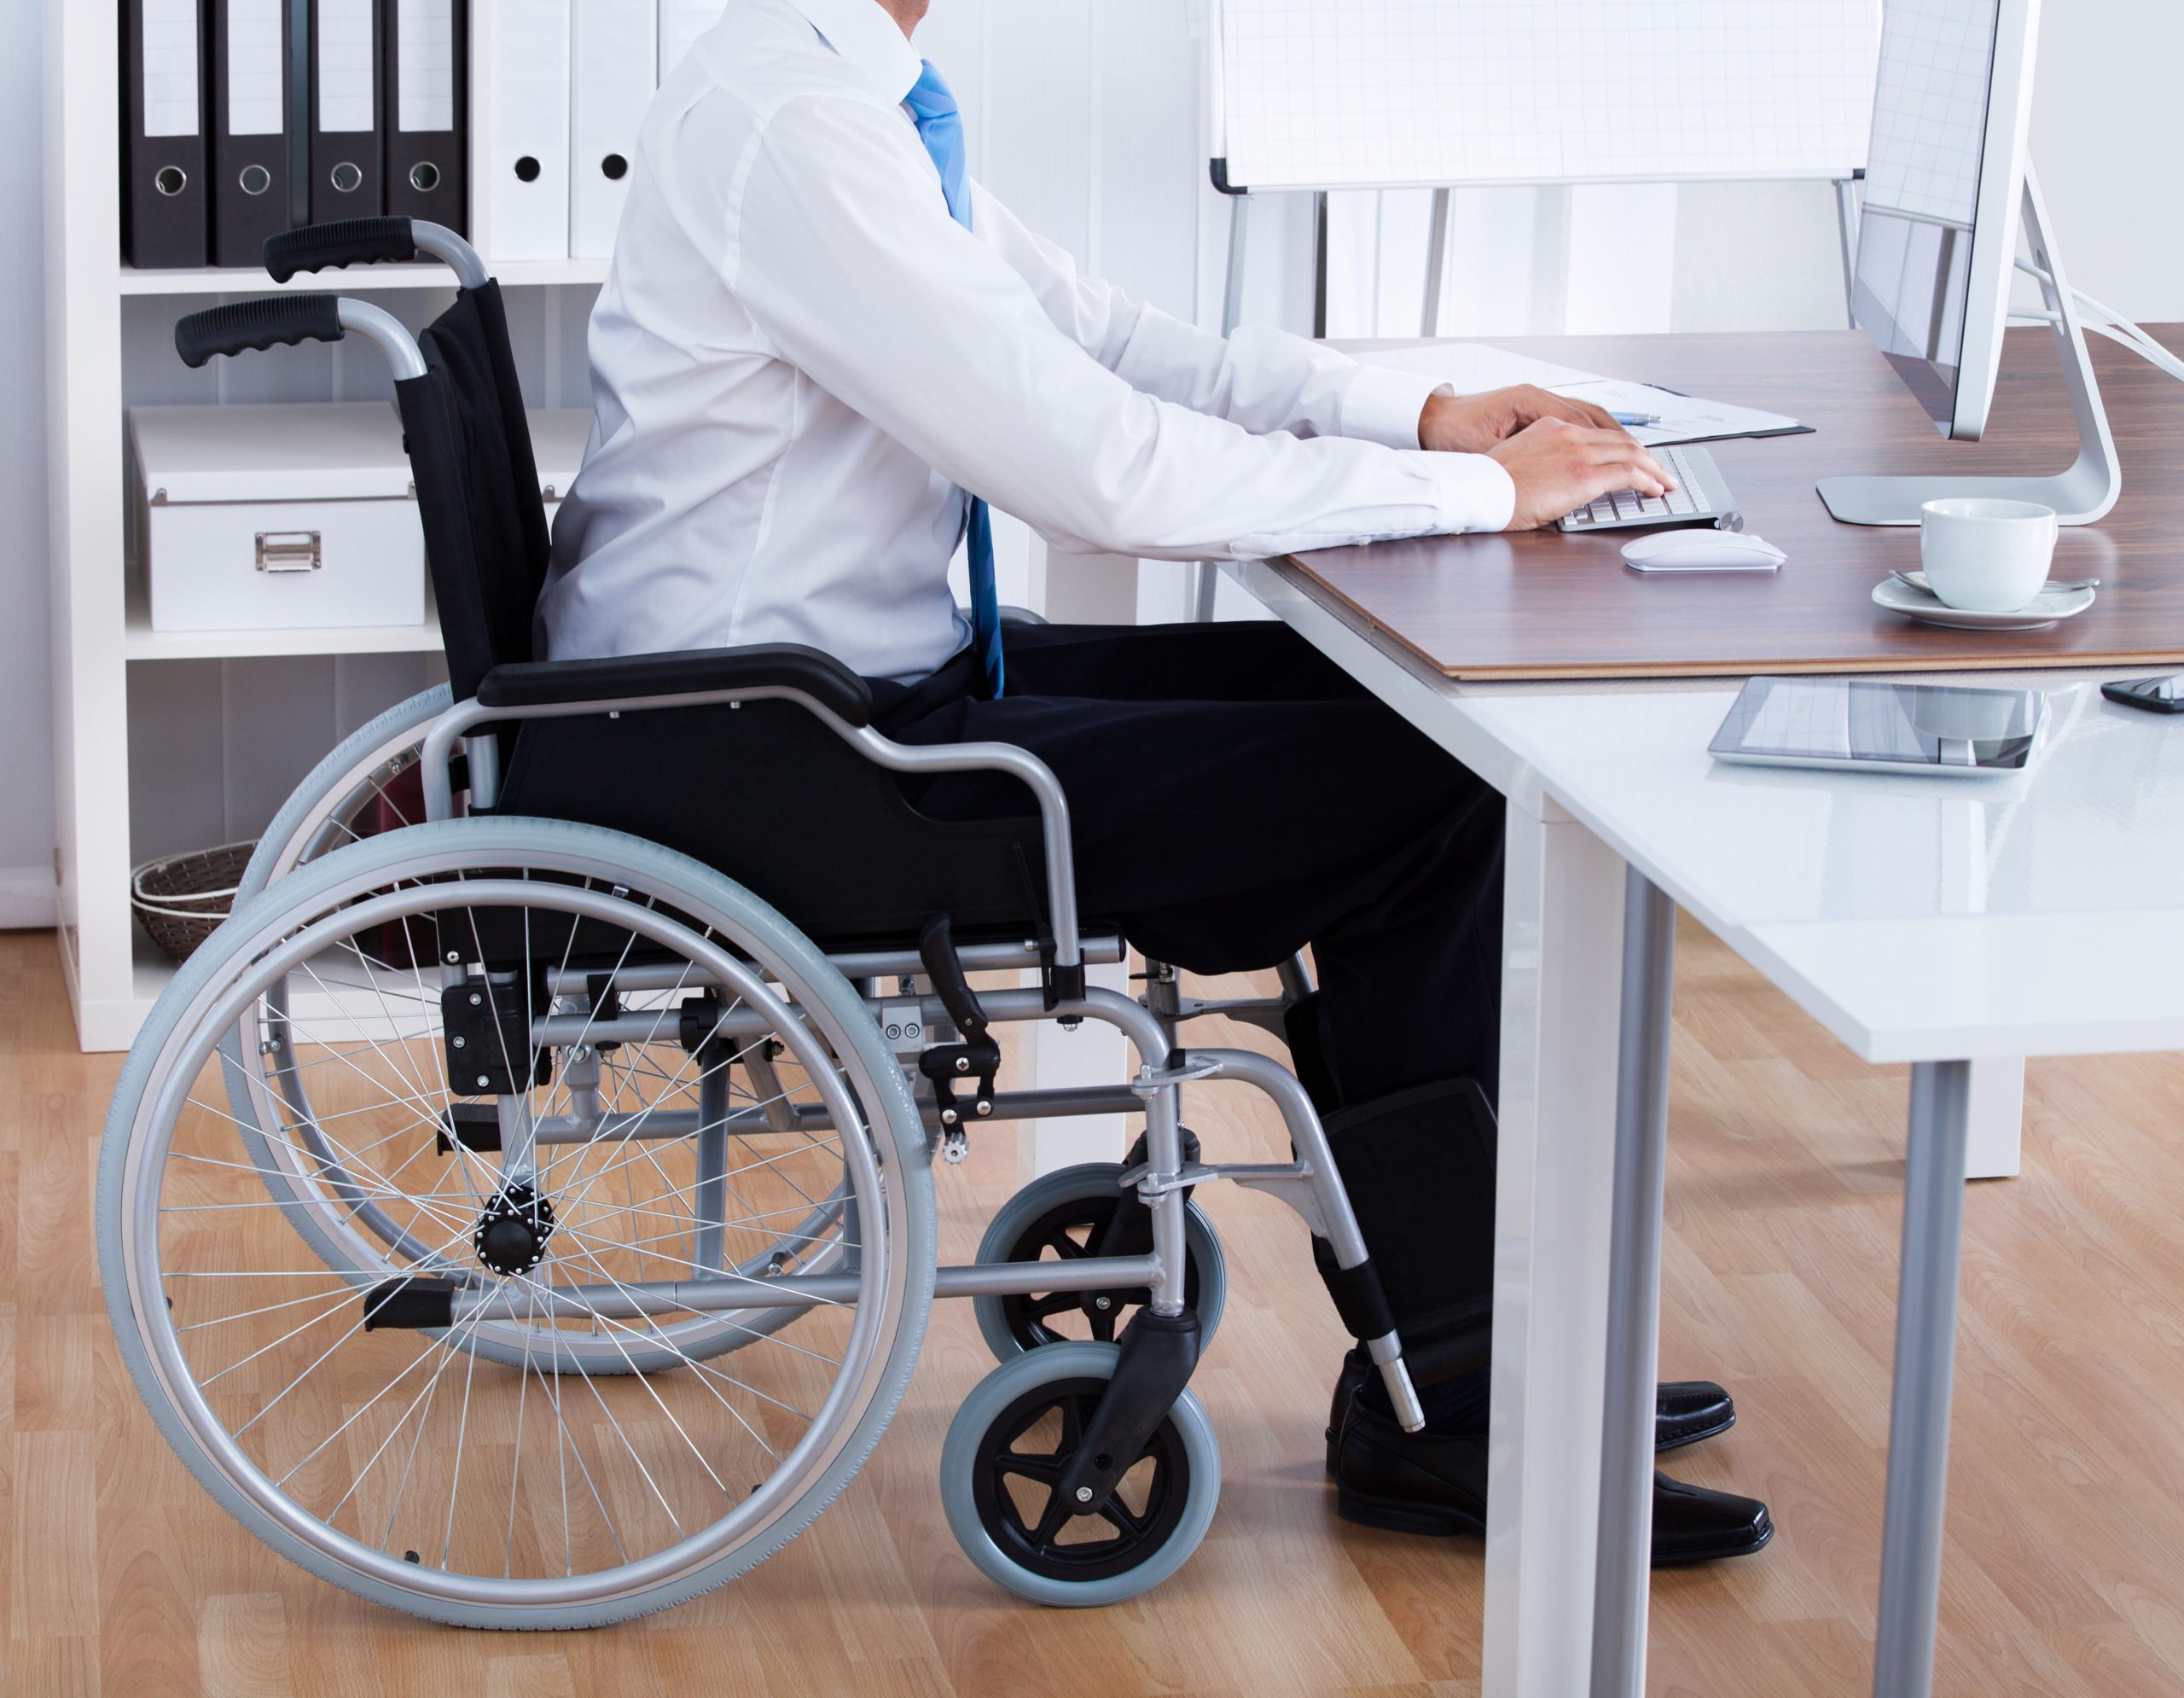 Инвалидность компания. Рабочие места для инвалидов. Трудоустройство инвалидов. Трудоустройство инаалид. Рабочее место для людей с ограниченными возможностями.